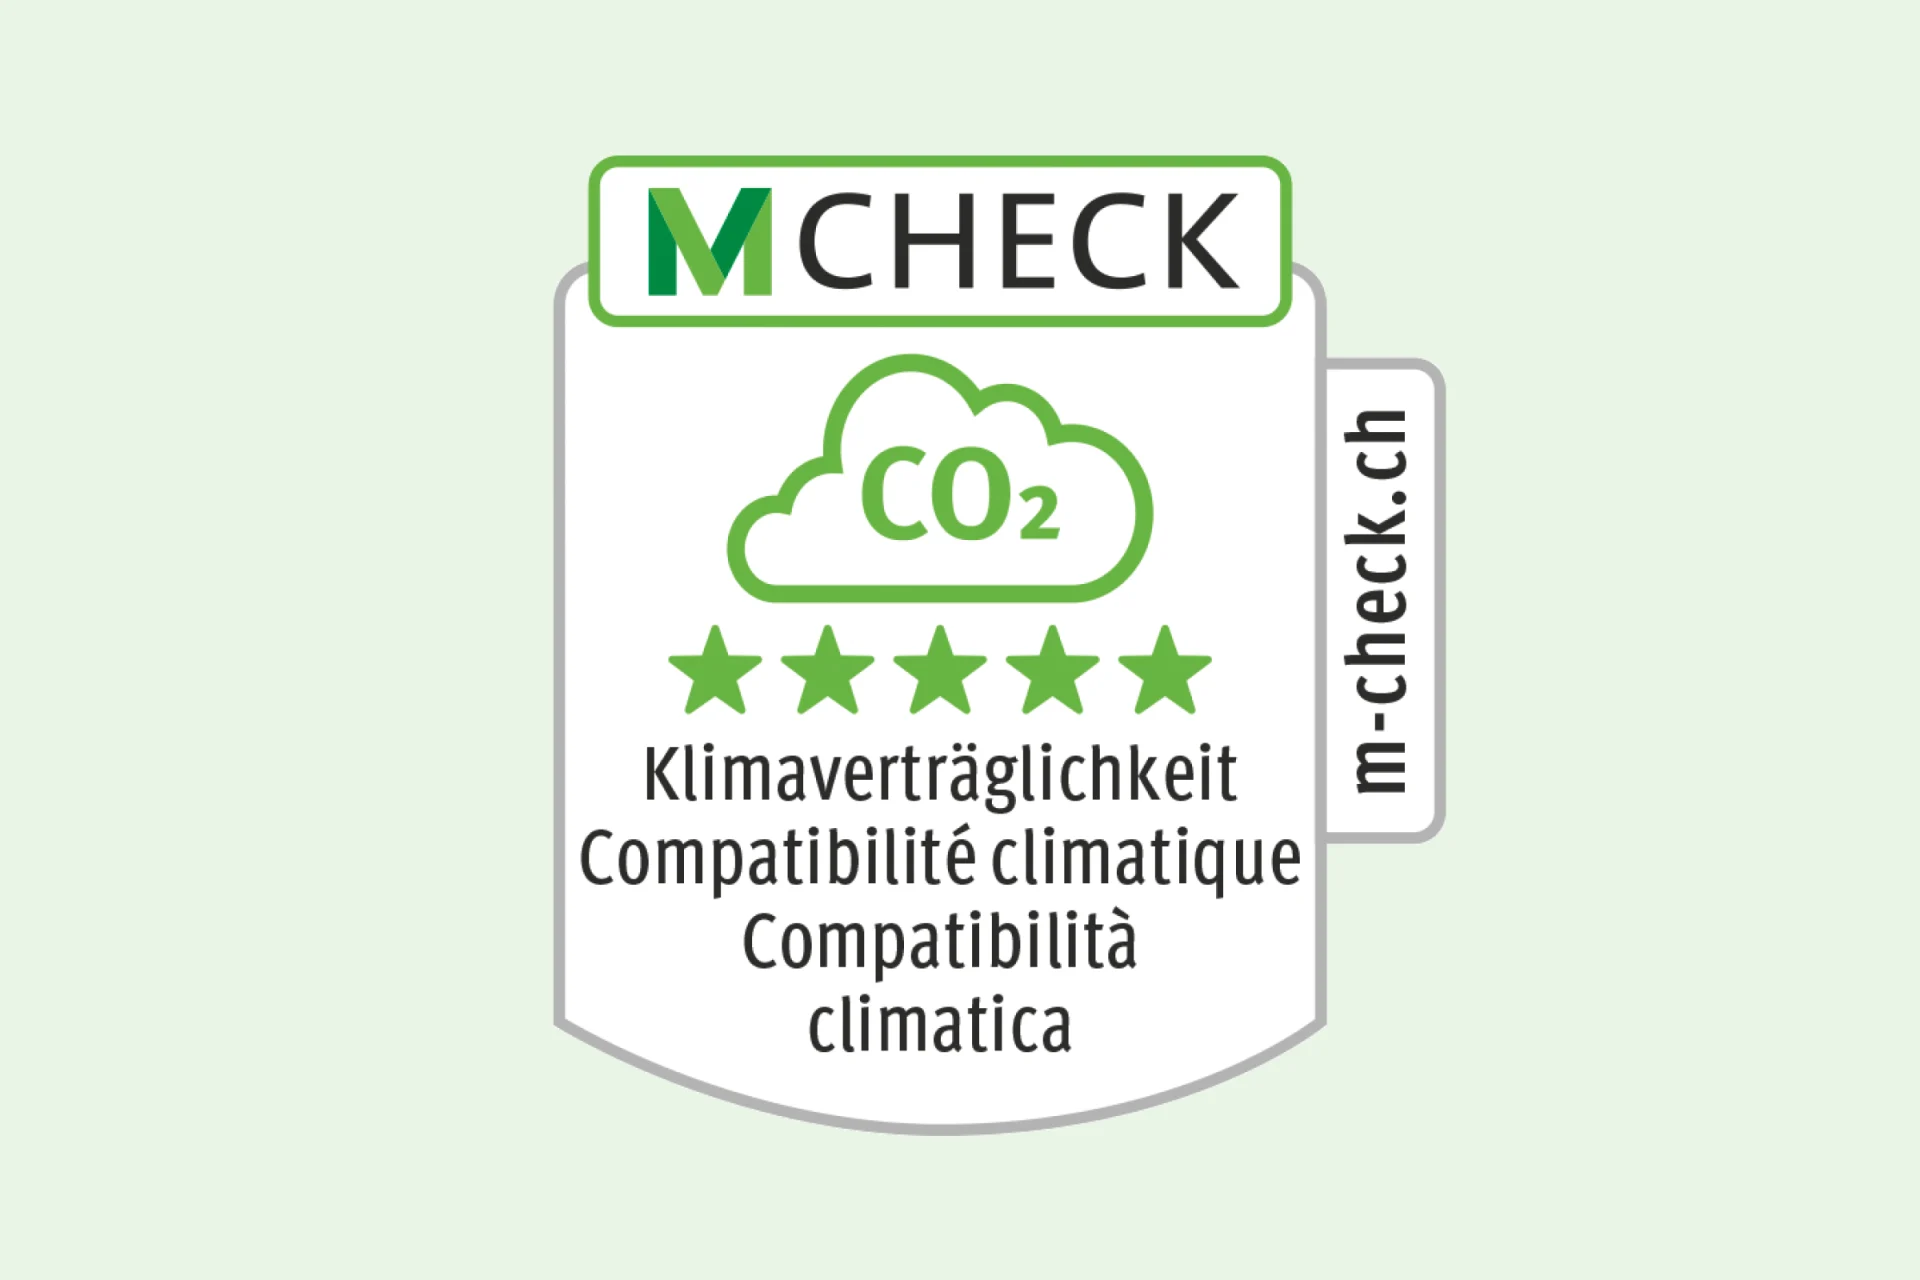 M-Check-Label Klimaverträglichkeit mit 5 grünen Sternen.